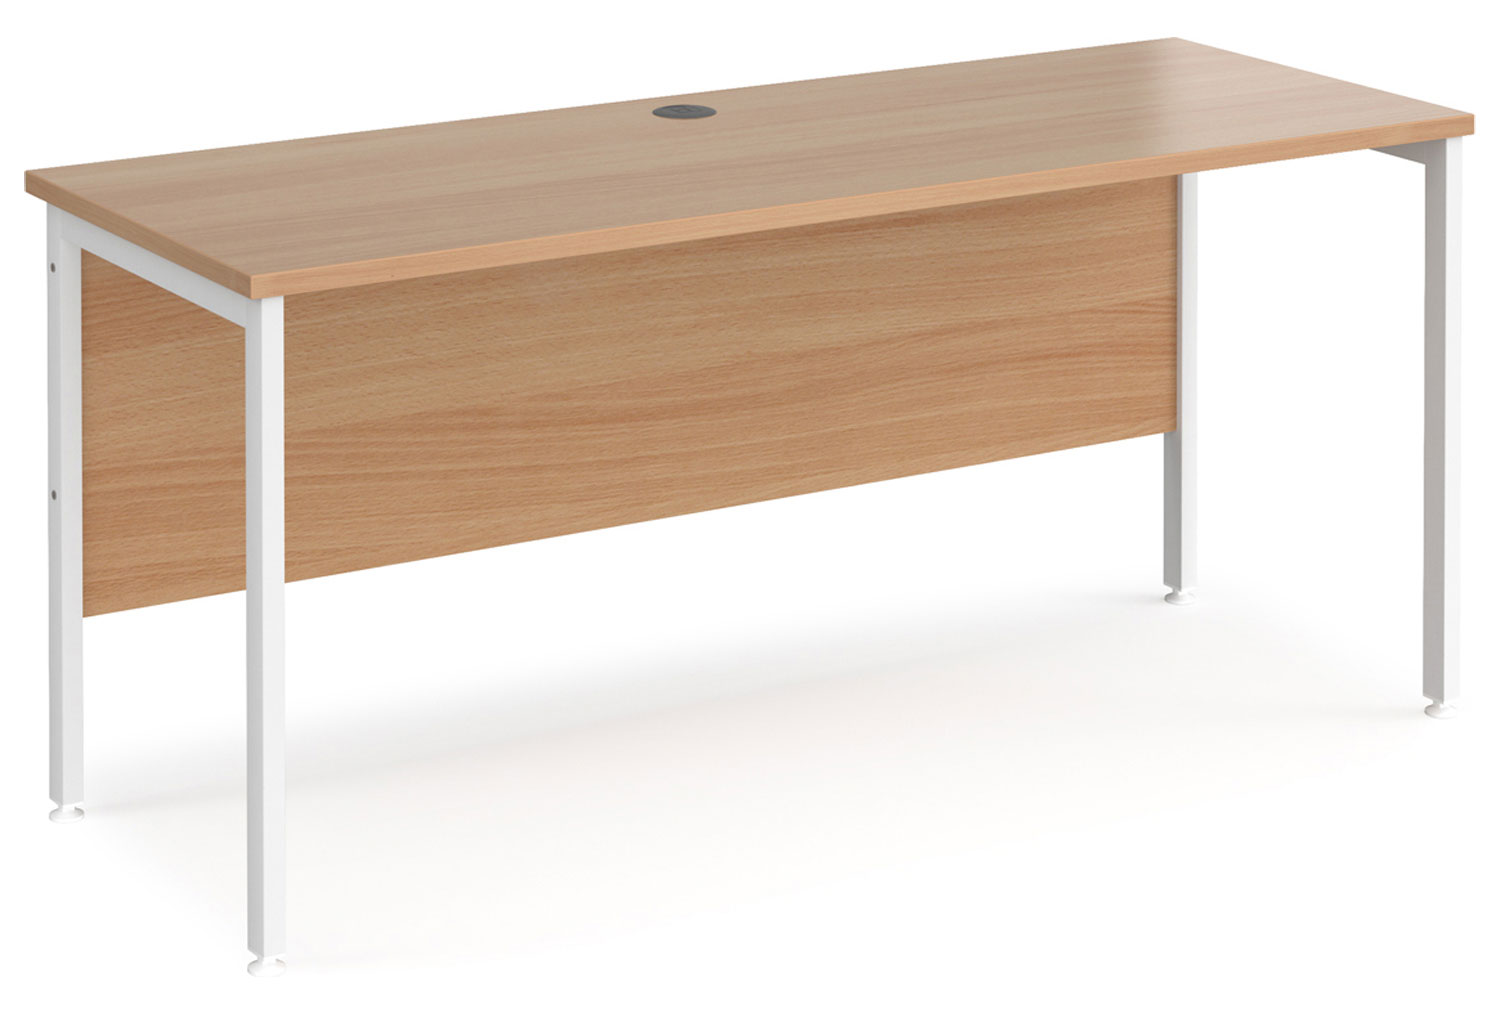 Value Line Deluxe H-Leg Narrow Rectangular Office Desk (White Legs), 160wx60dx73h (cm), Beech